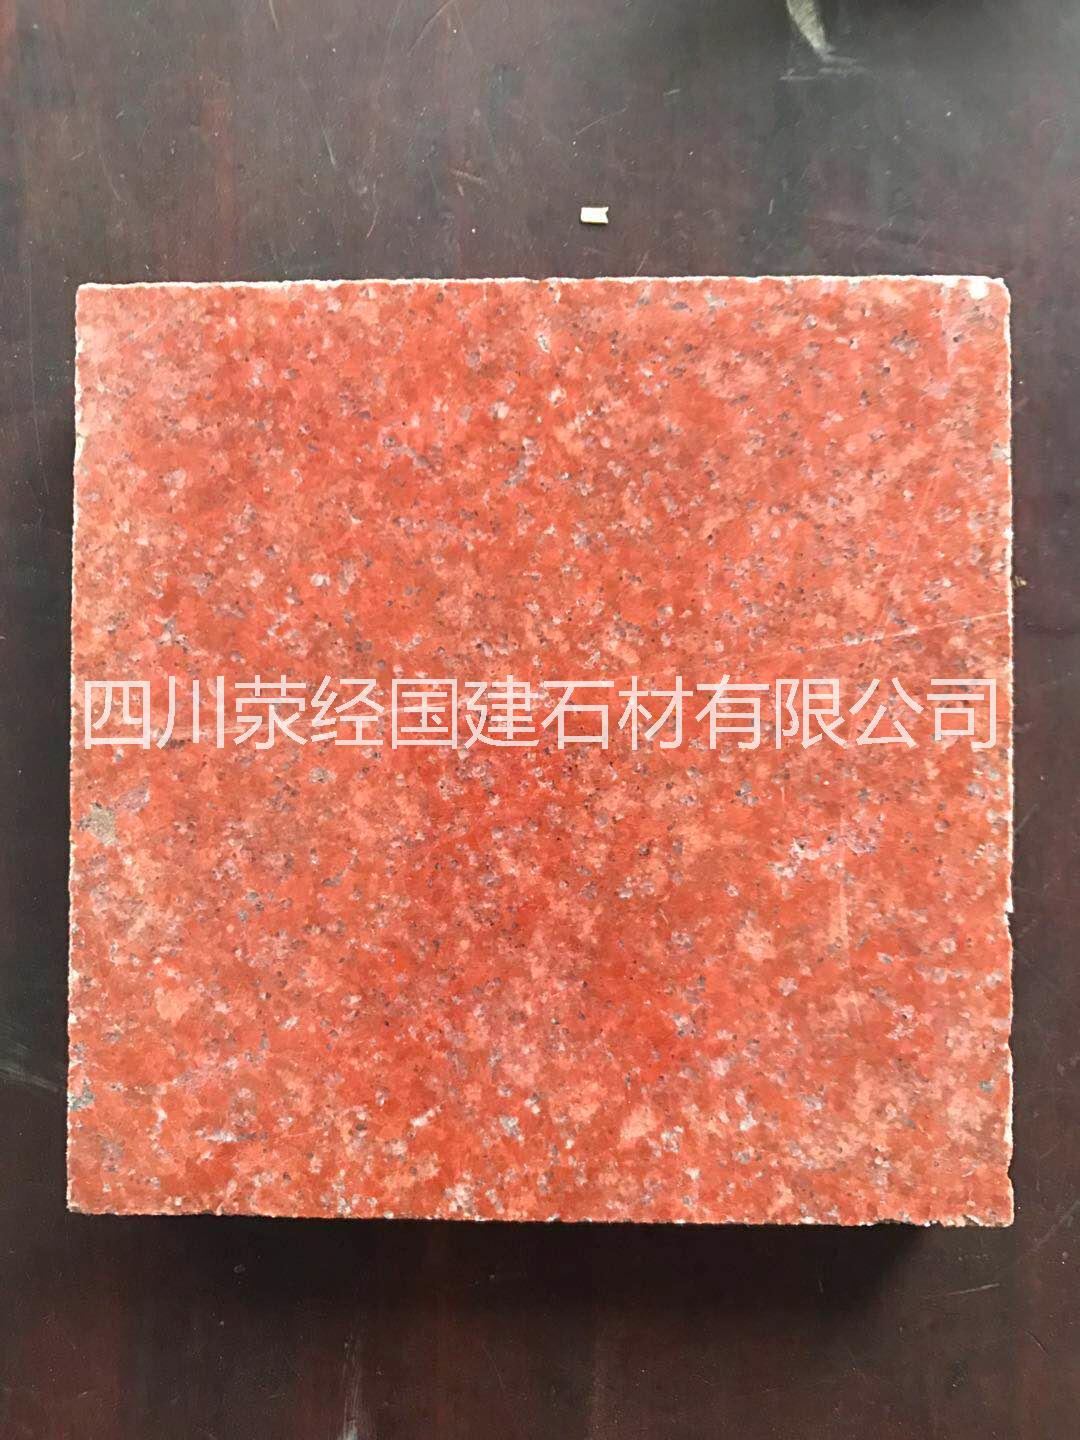 中国红光面中国红光面供应商中国红光面厂家直销中国红光面价格图片